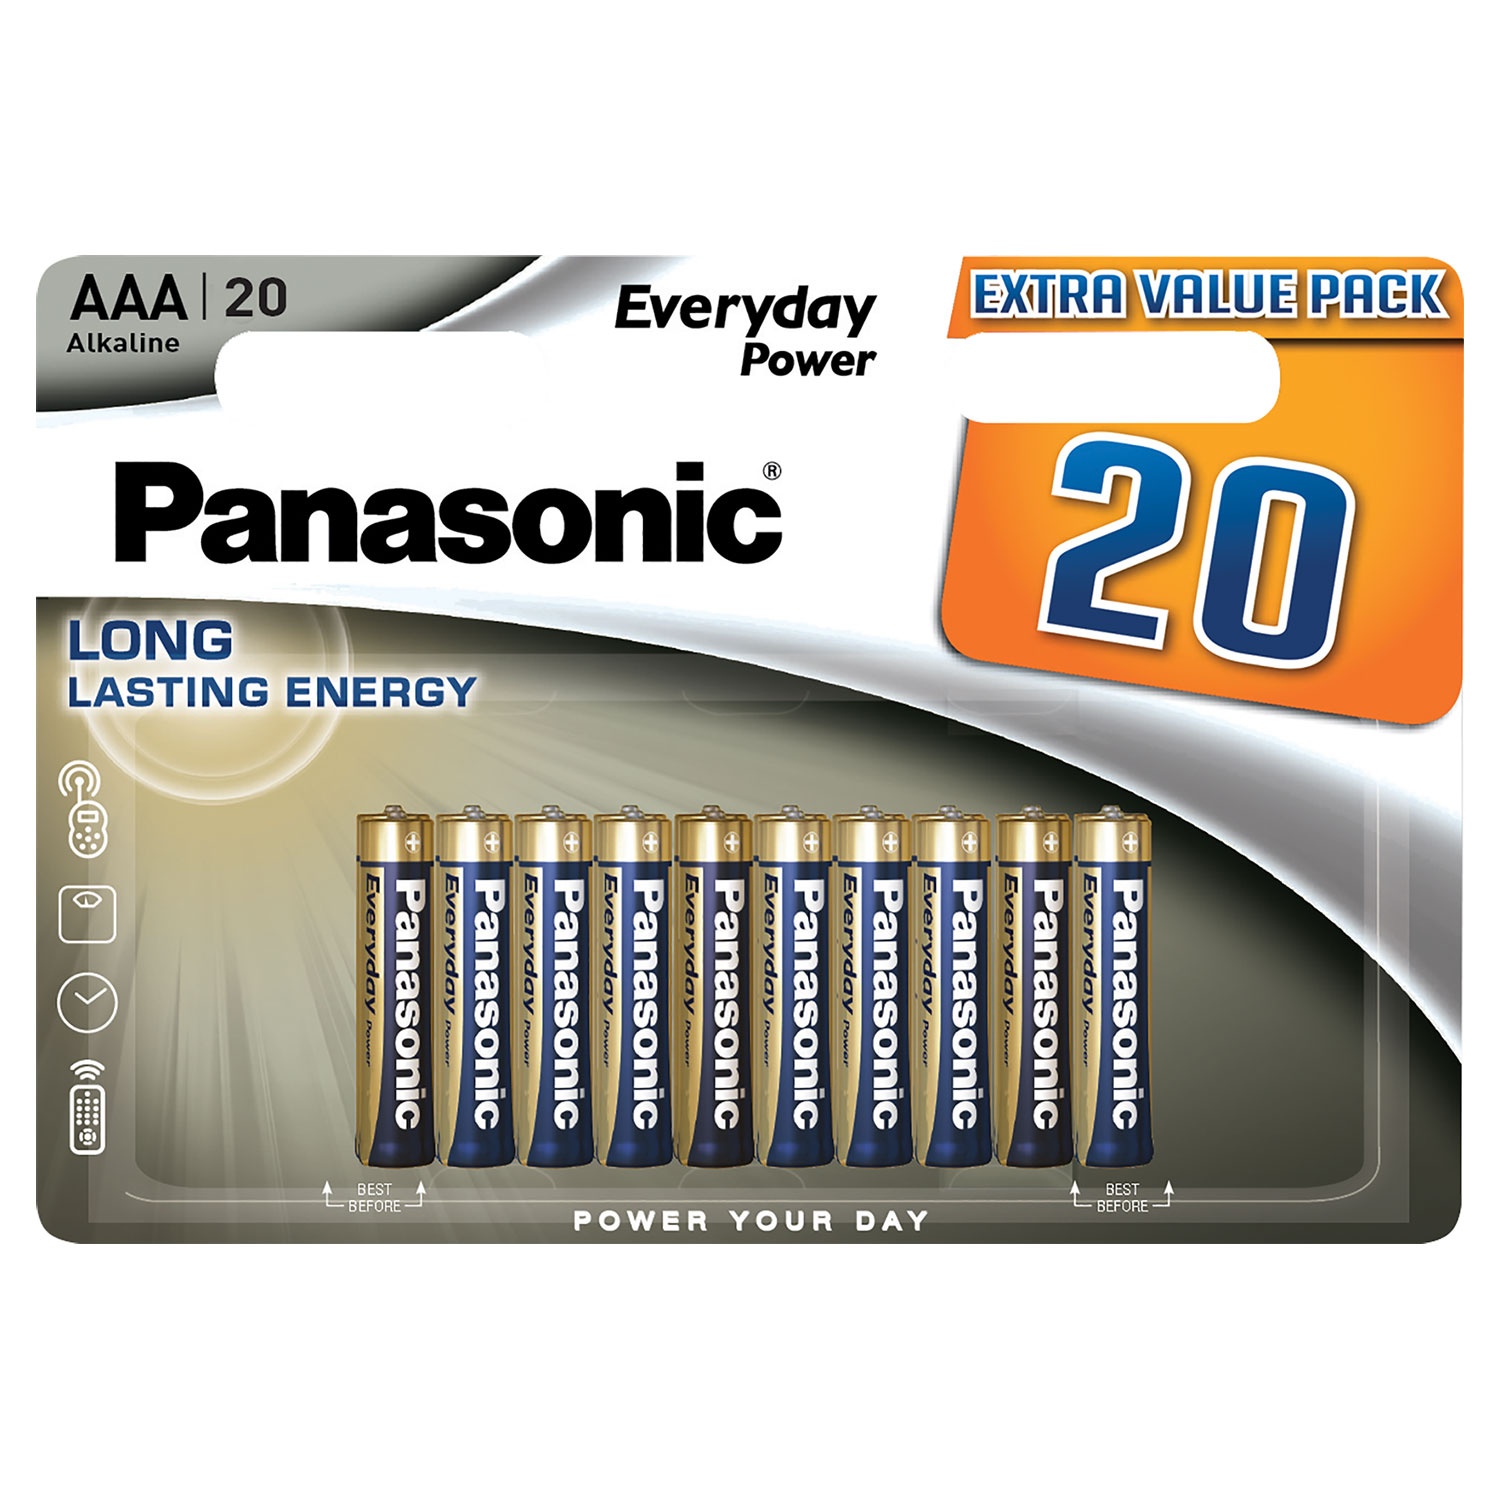 PANASONIC Everyday Power Alkali-Batterien, 20er-Packung